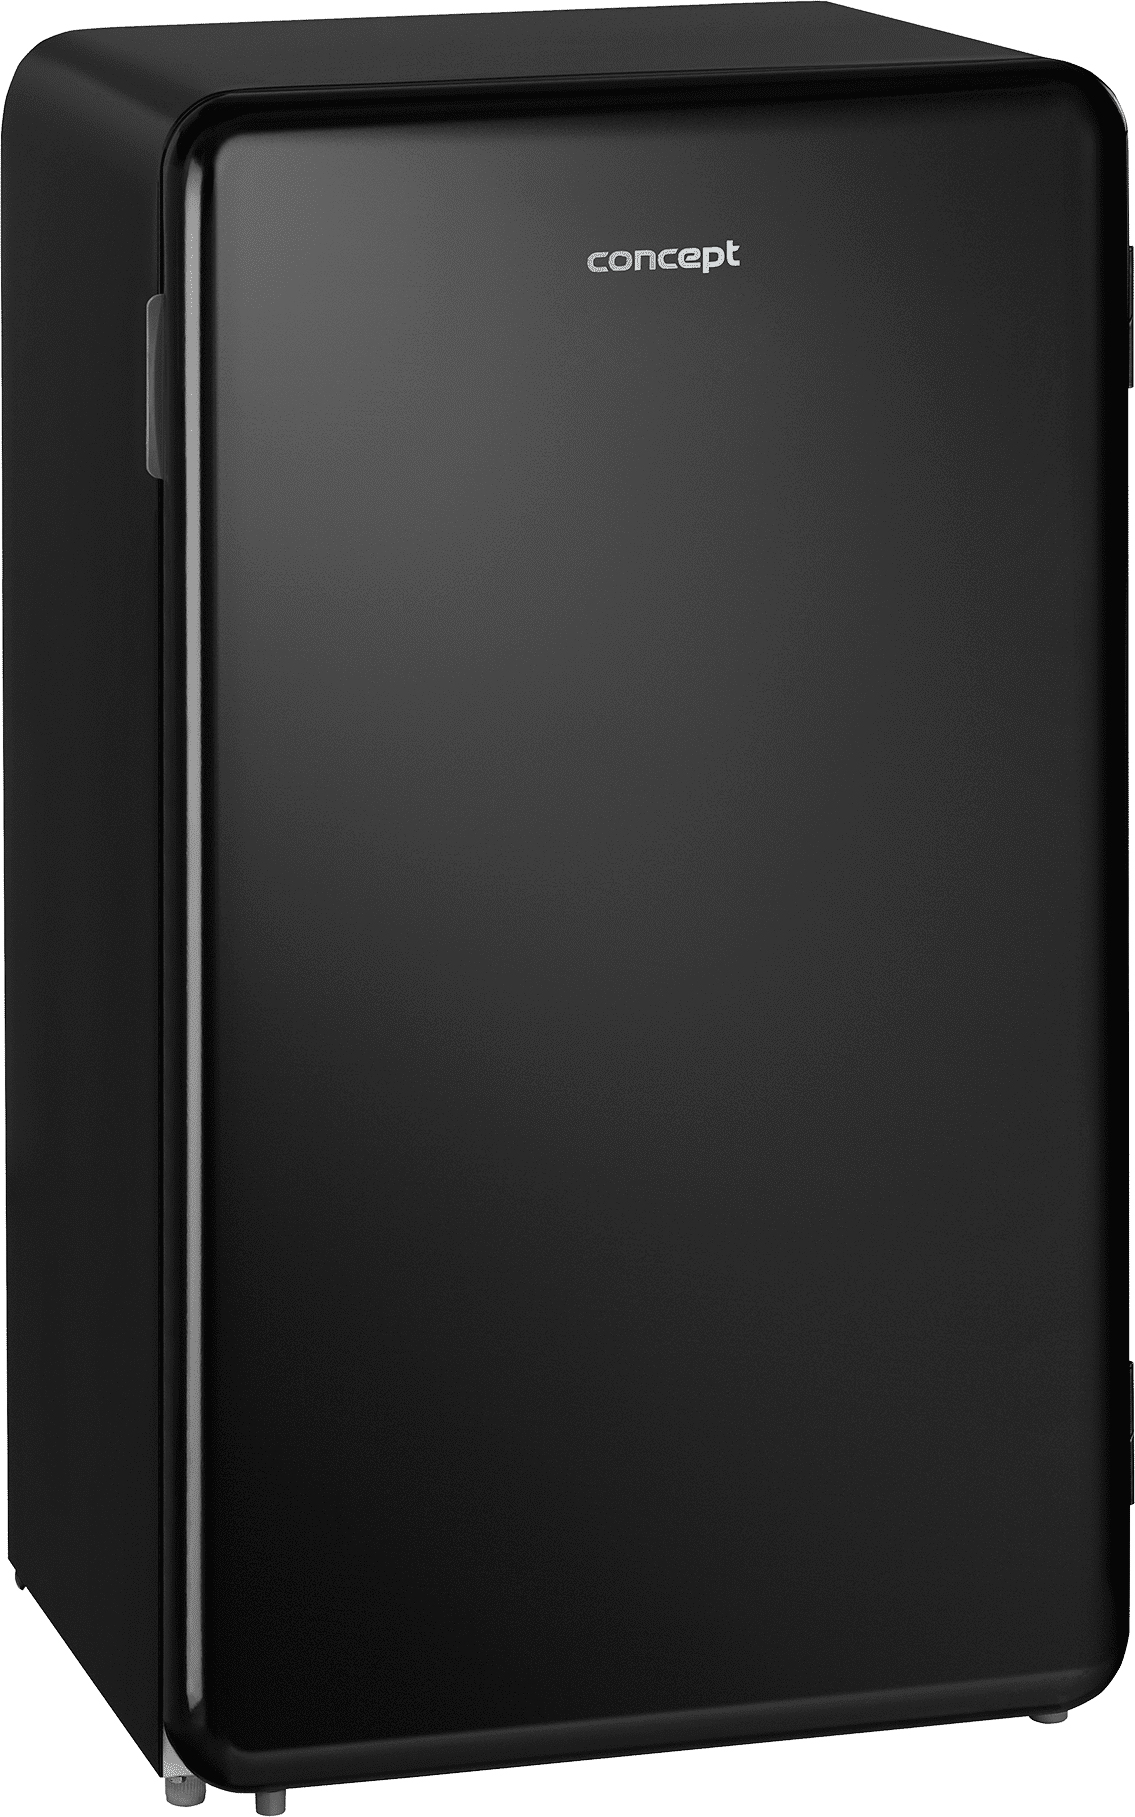 Холодильник Concept LTR3047bc отзывы - изображения 5